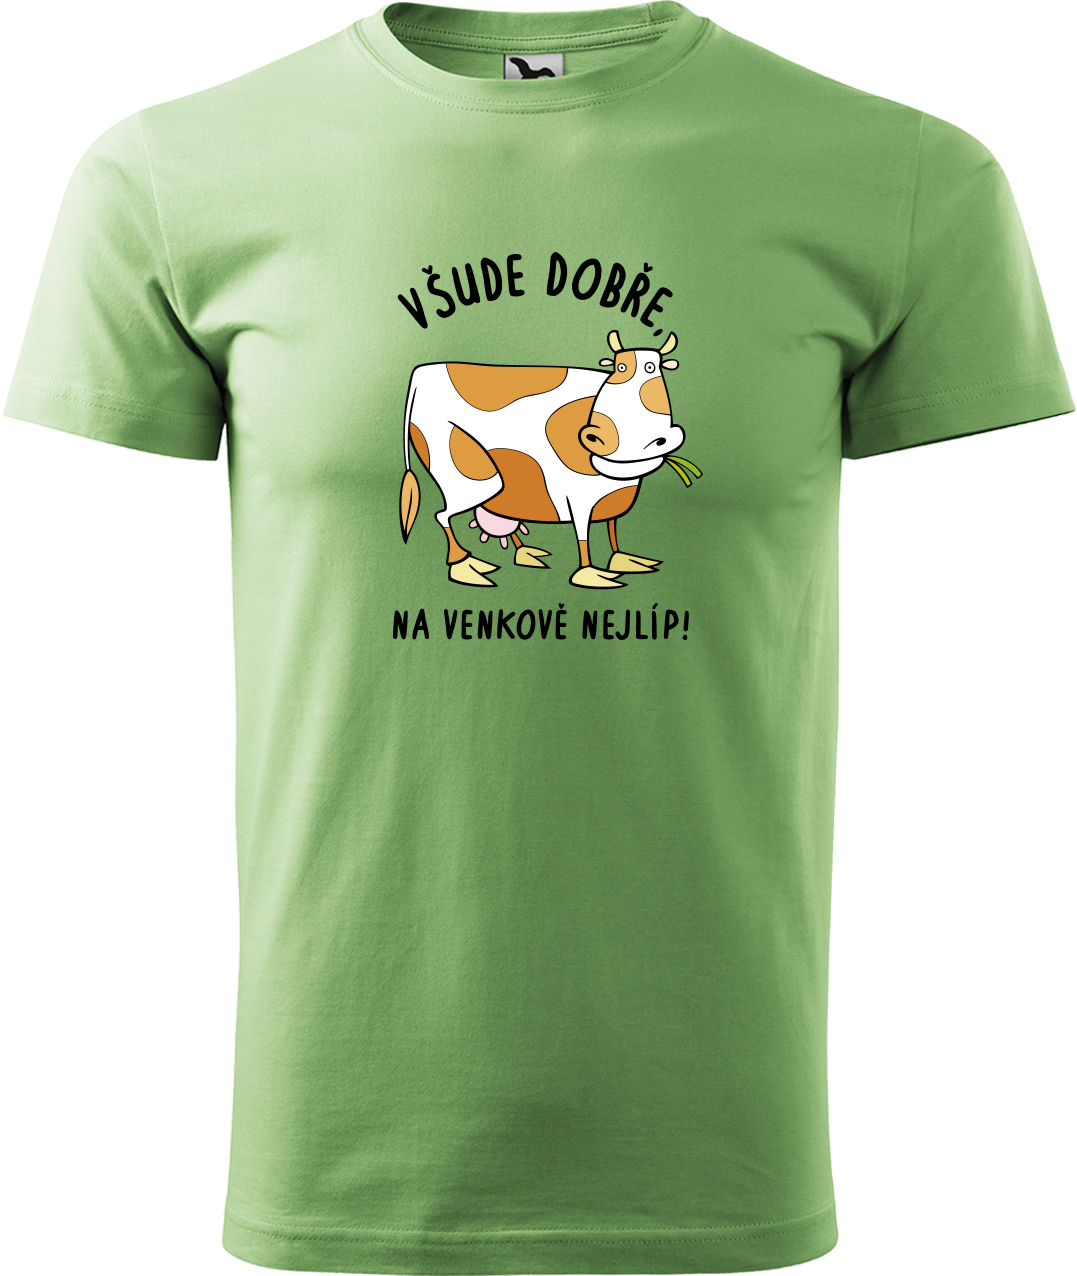 Pánské tričko s krávou - Všude dobře, na venkově nejlíp! Velikost: XL, Barva: Trávově zelená (39), Střih: pánský